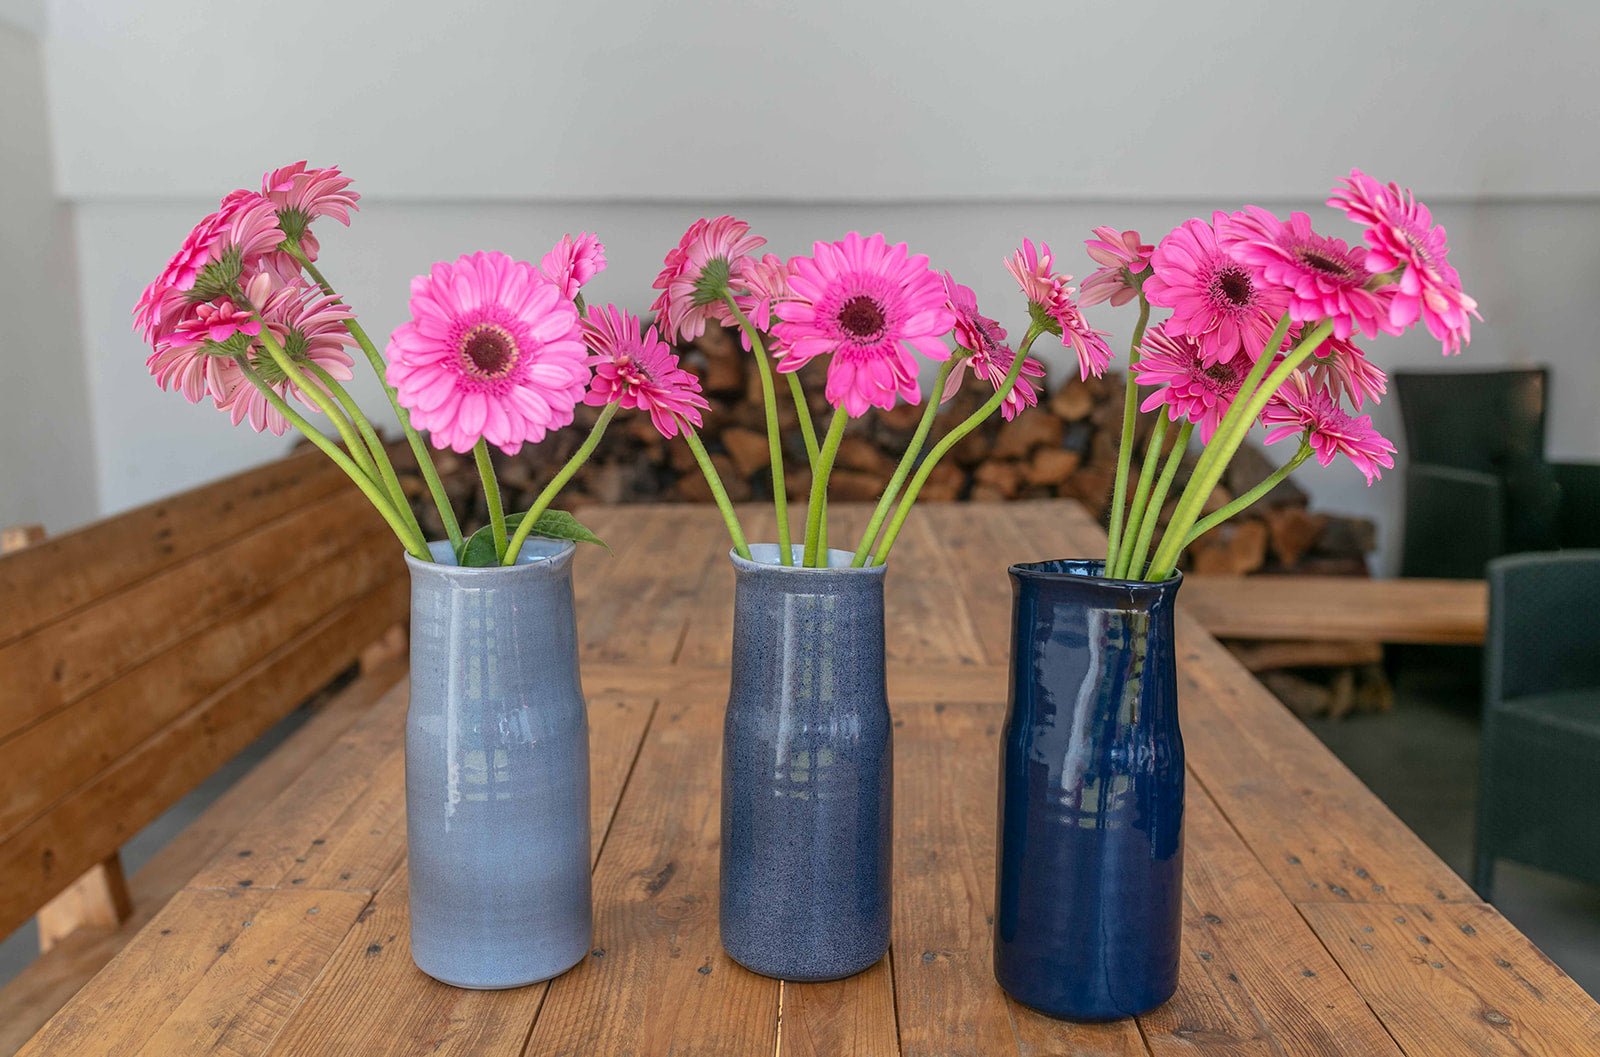 Handmade blue vase from Portugal